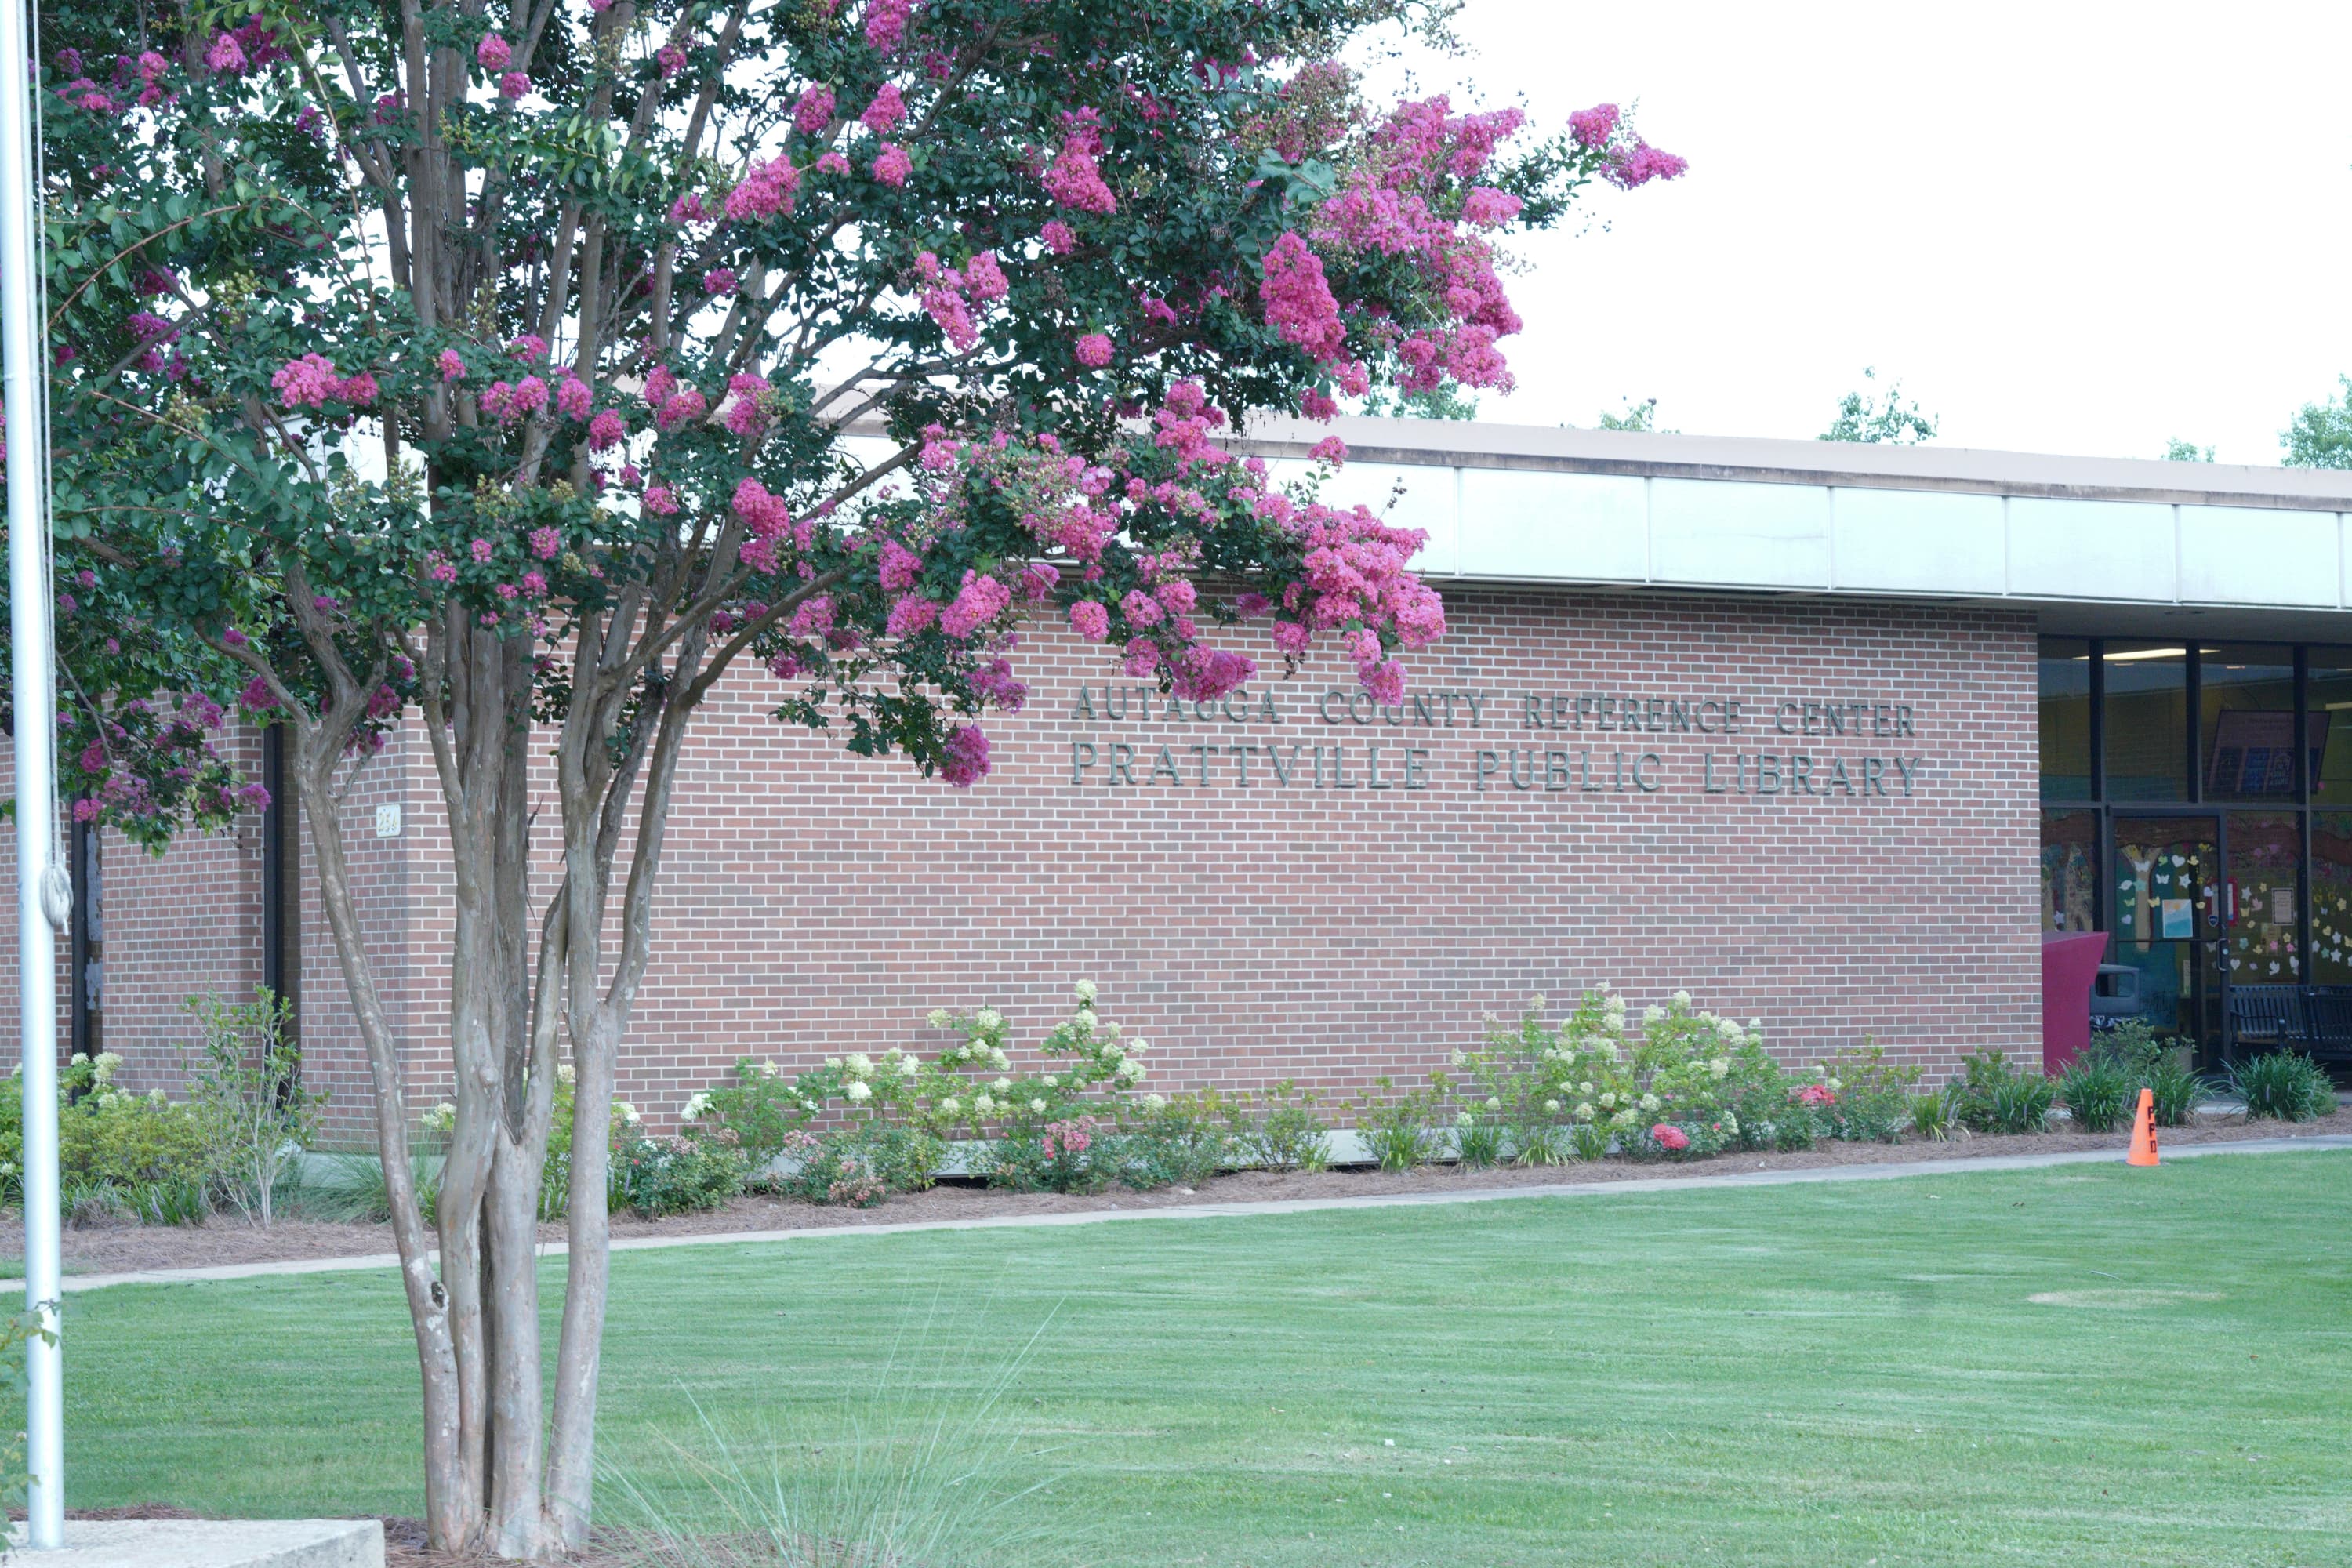 Prattville-Autauga Library.